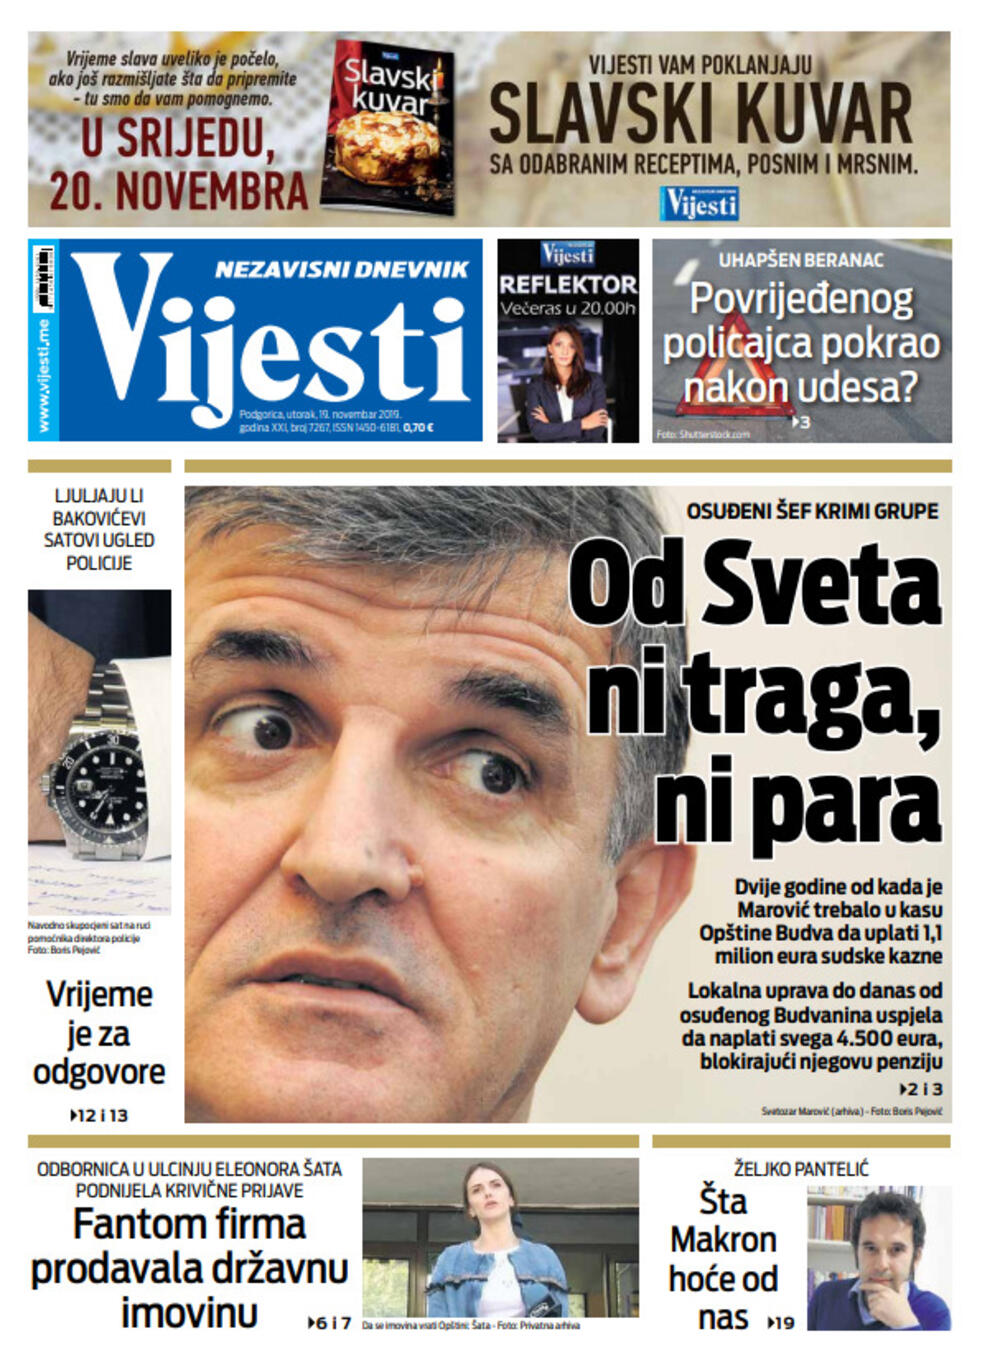 Naslovna strana "Vijesti" 19.11., Foto: Vijesti